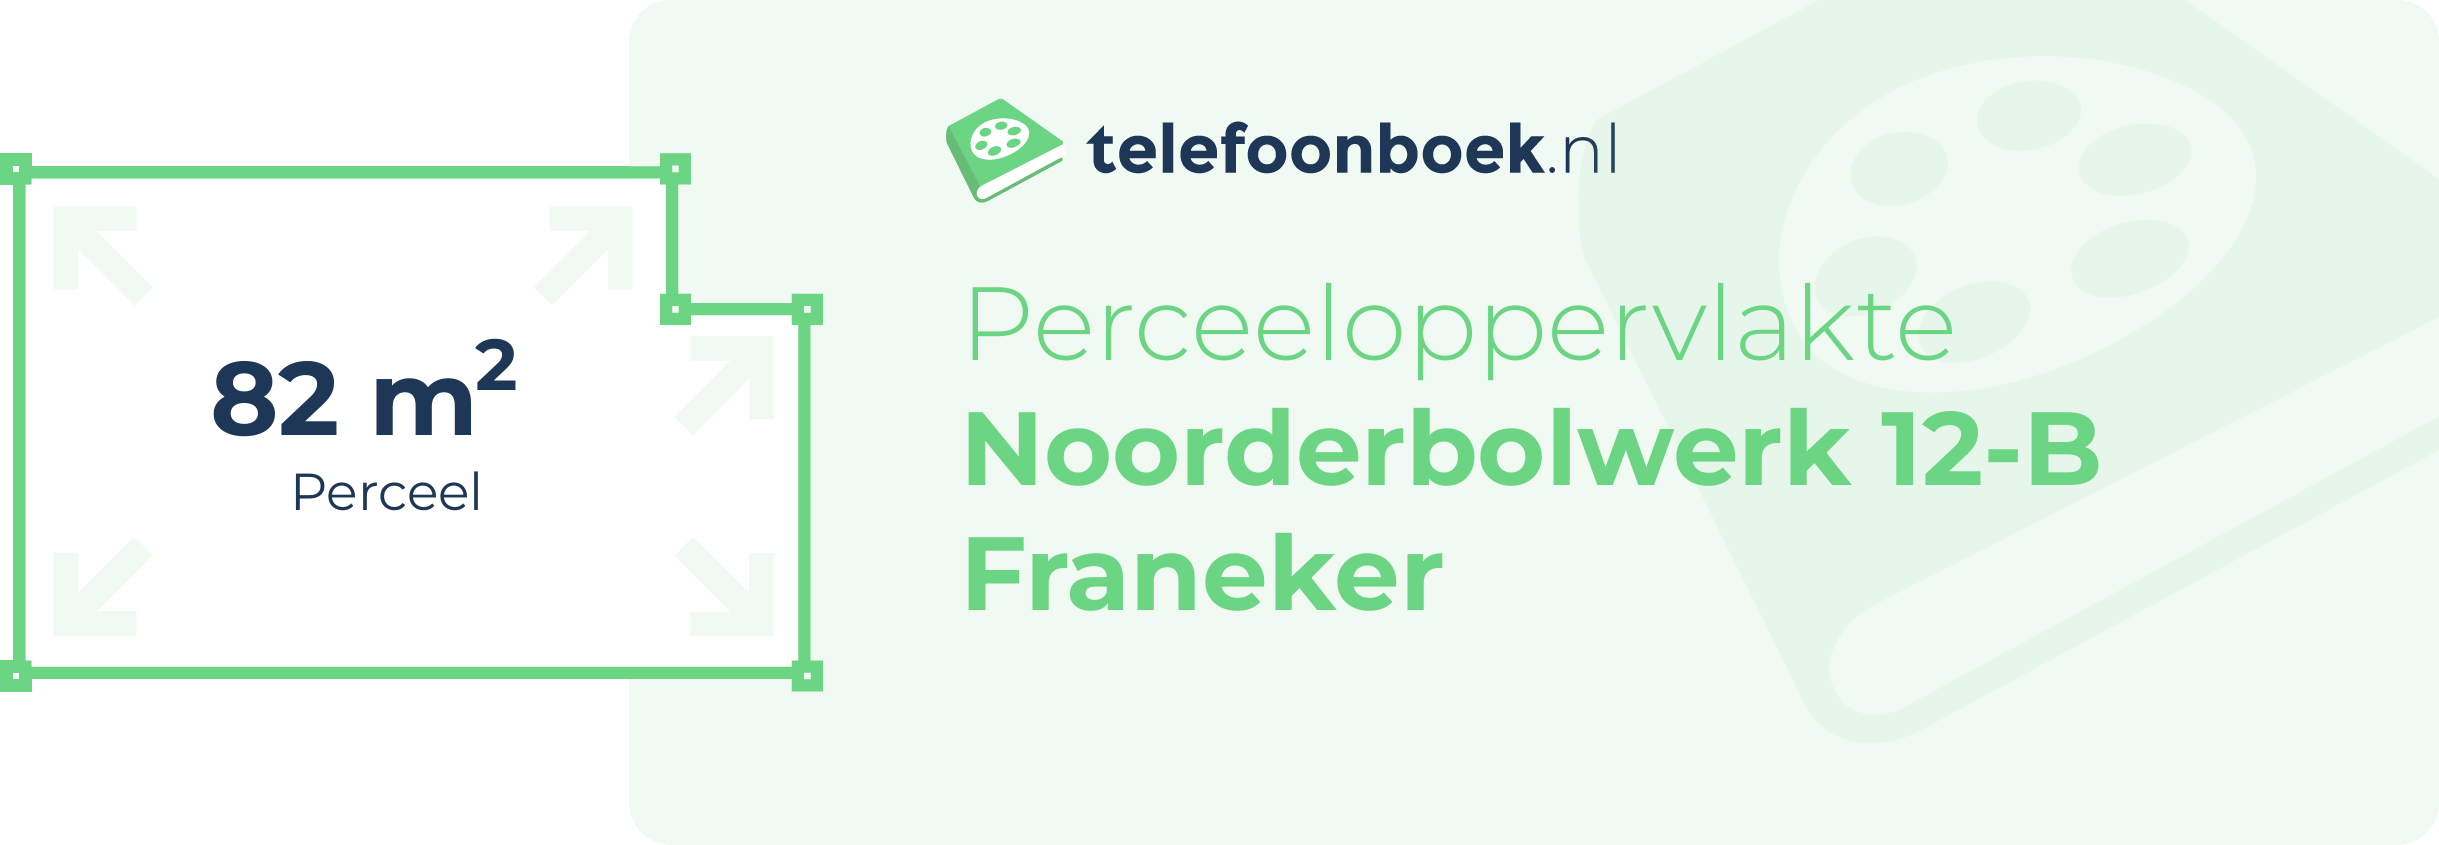 Perceeloppervlakte Noorderbolwerk 12-B Franeker